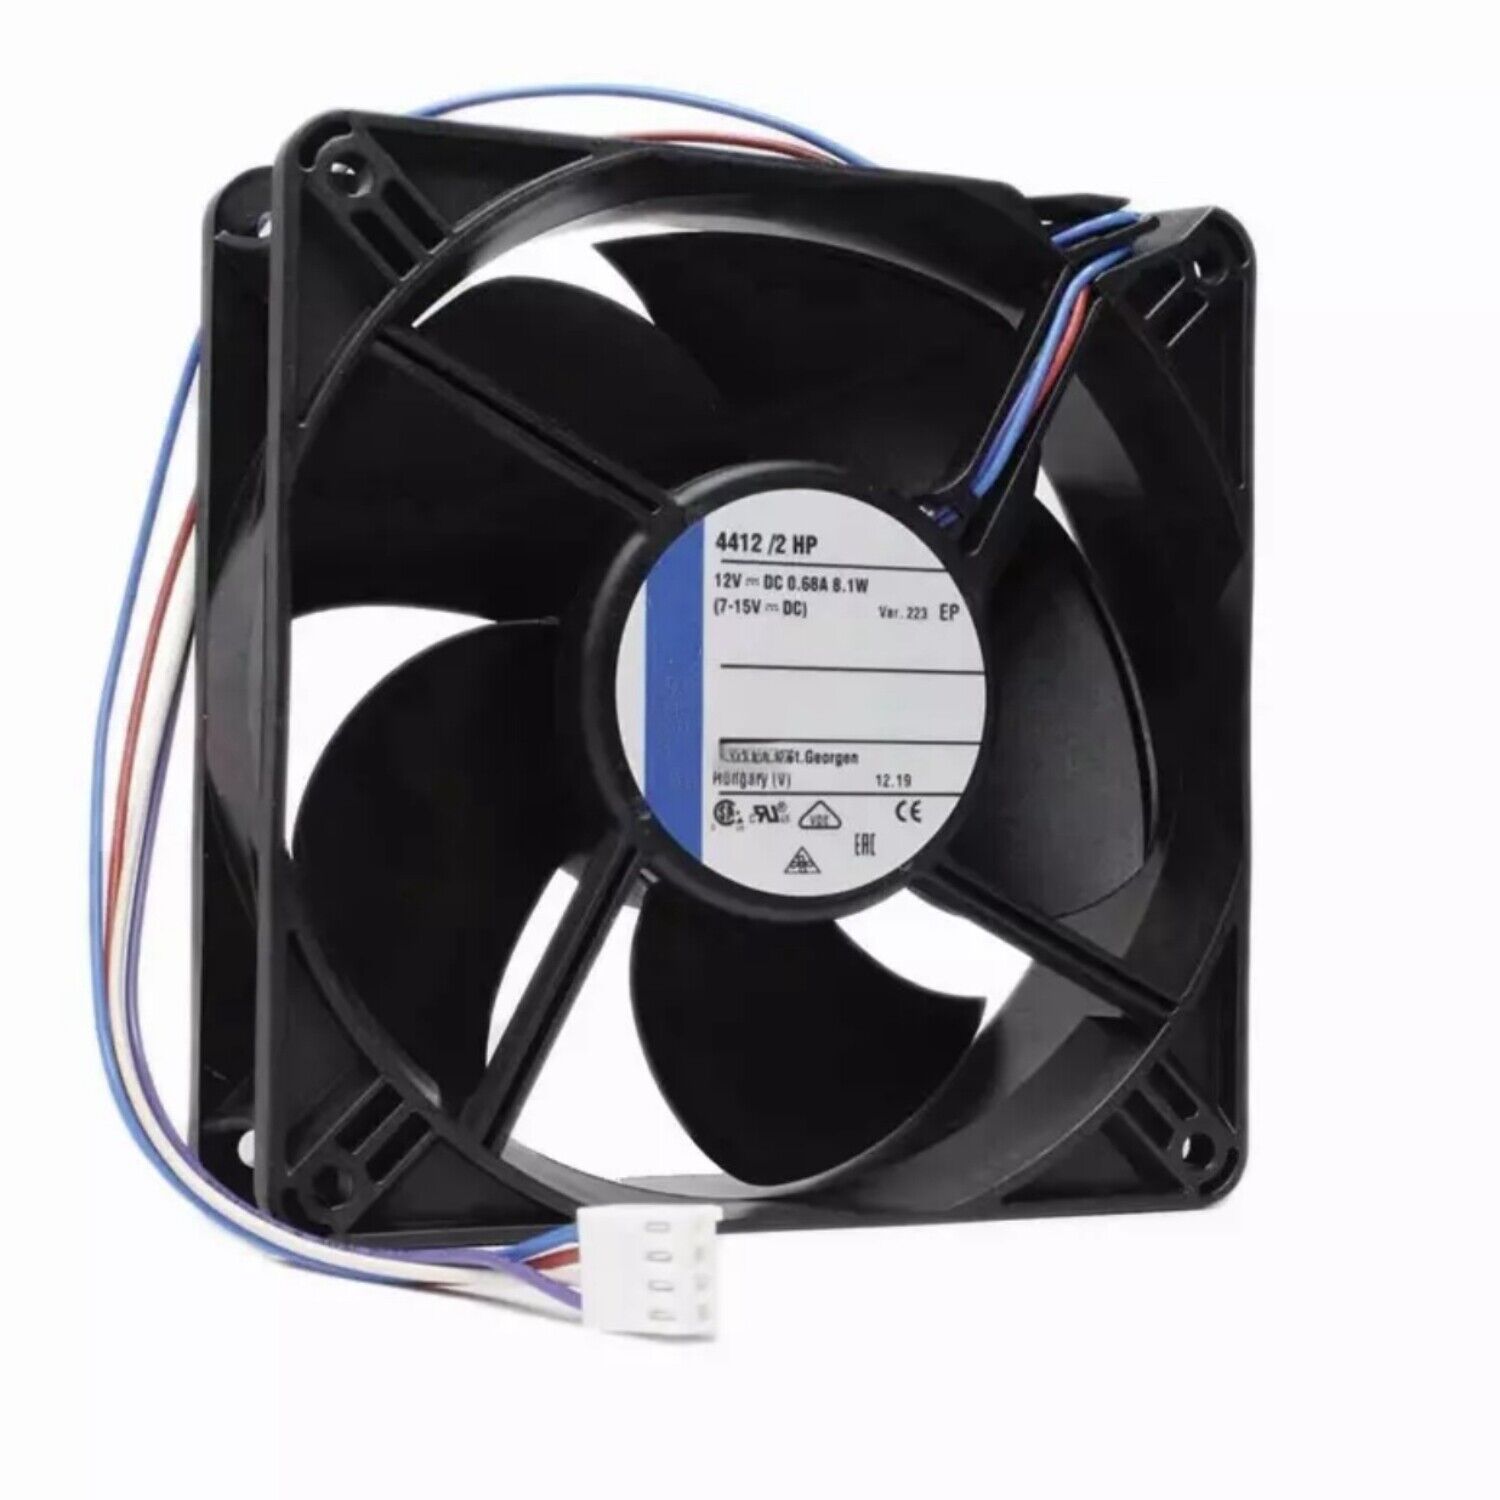 1Pcs New 4412/2HP Axial Fan 12VDC 0.68A 8.1W 120*120*38MM 4-wire Cooling Fan